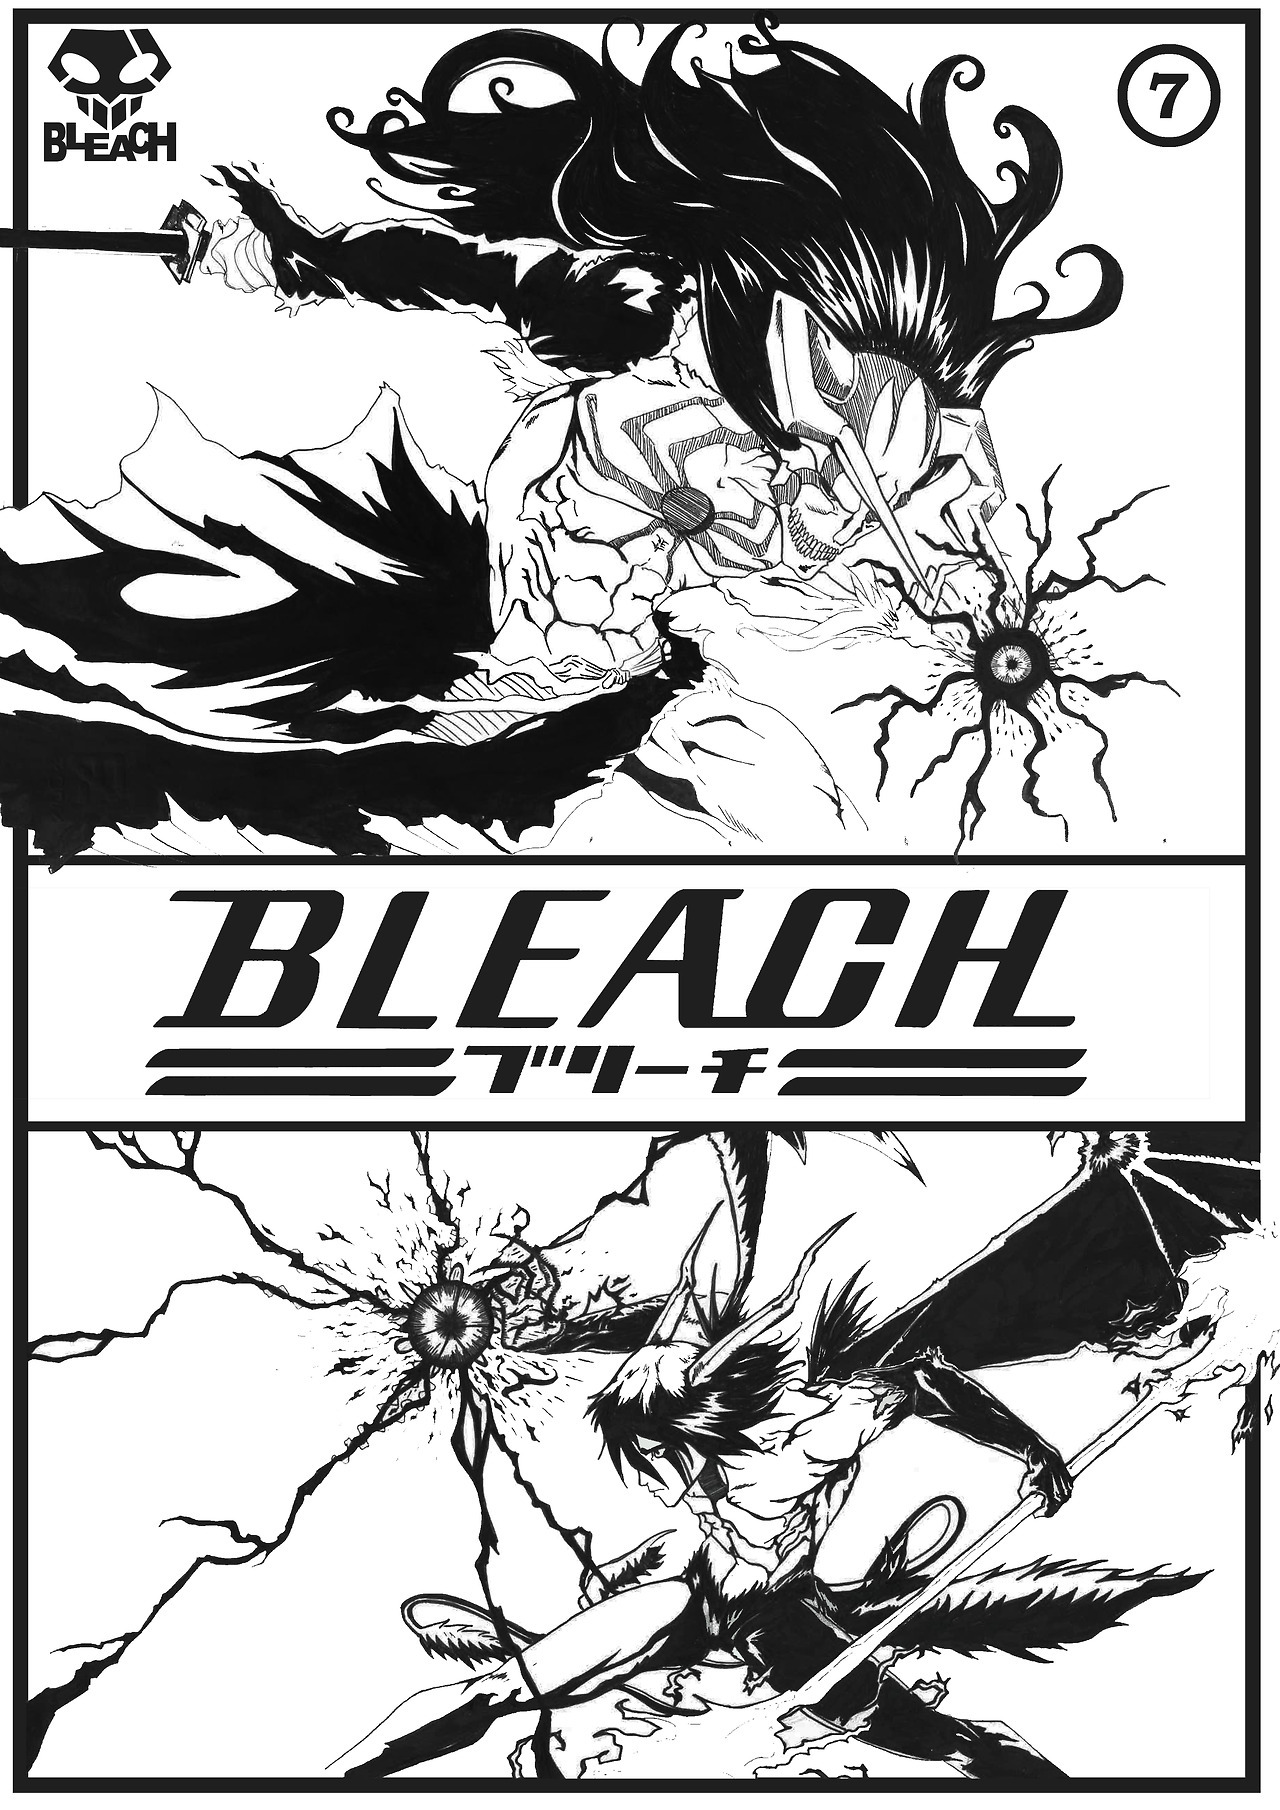 Bleach: Ichigo vs Ulquiorra